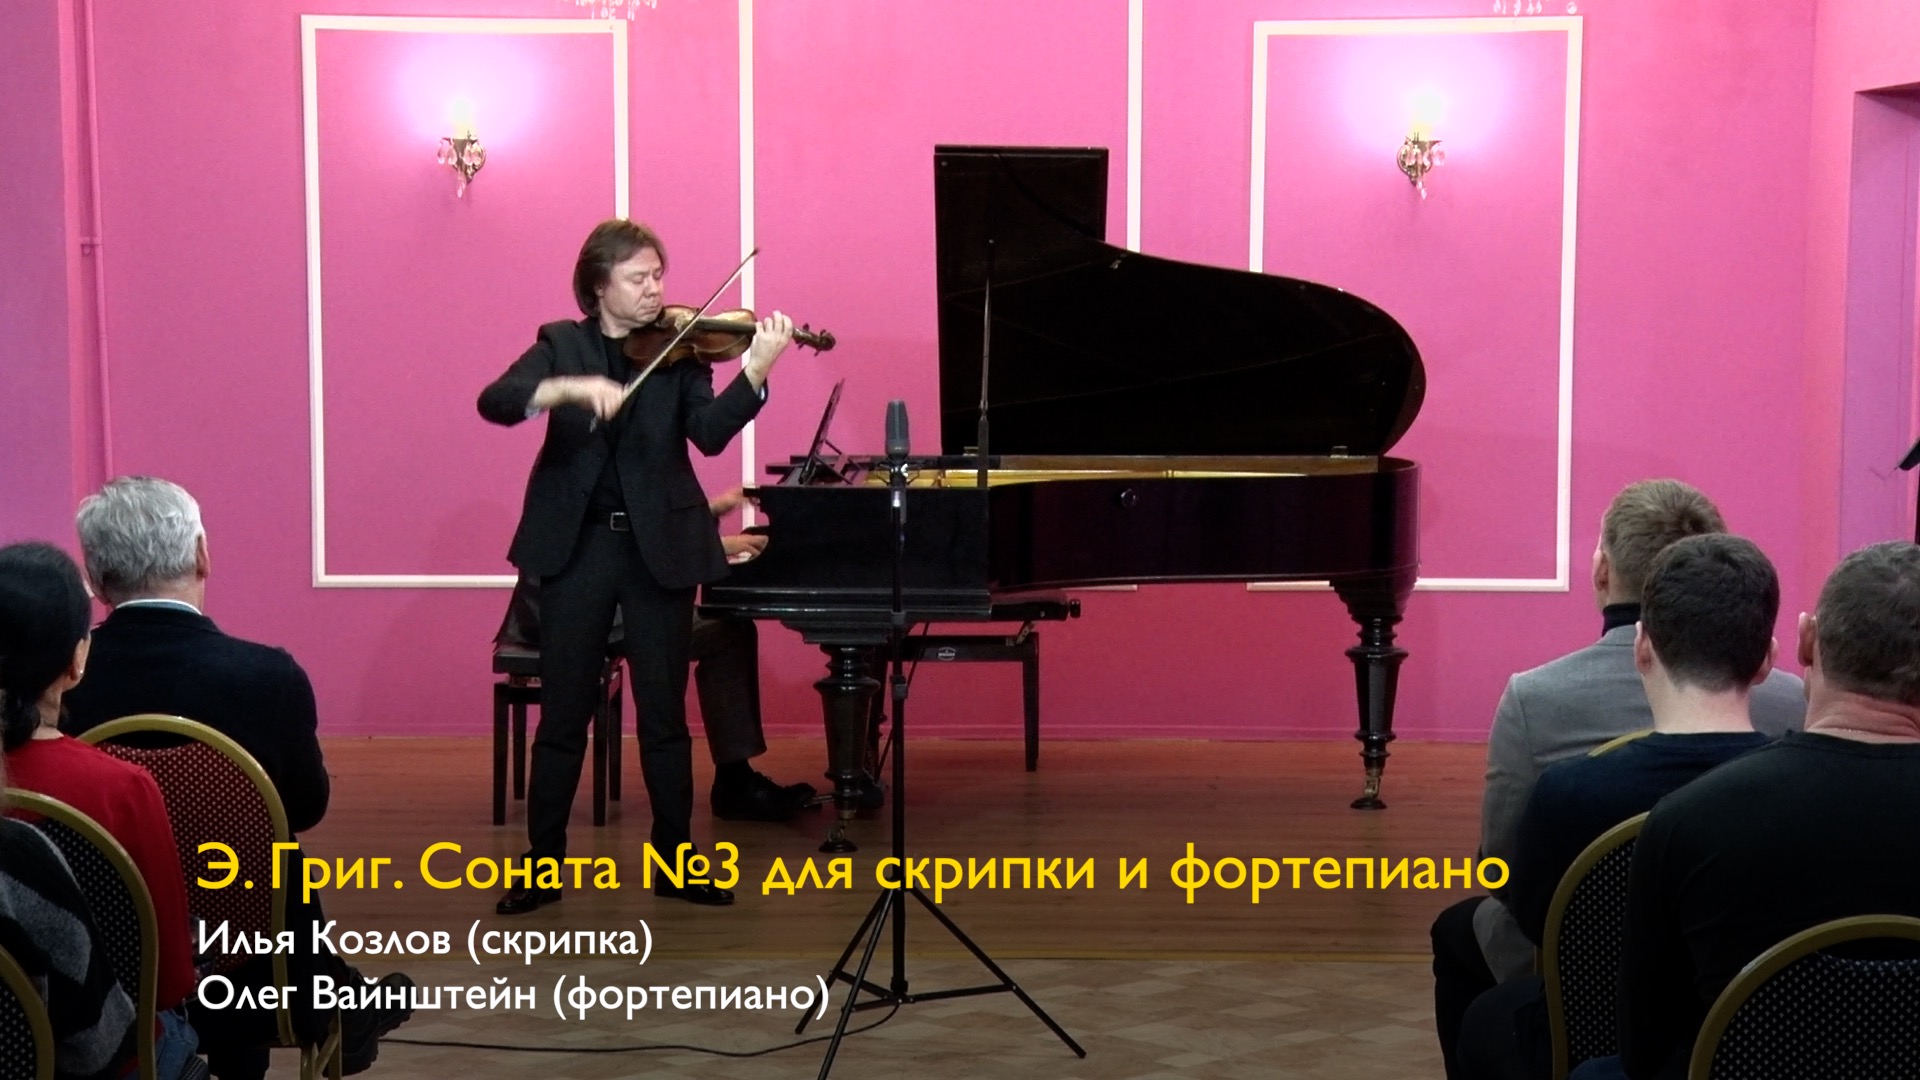 Э. Григ. Соната №3 для скрипки и фортепиано. Илья Козлов (скрипка), Олег Вайнштейн (фортепиано)